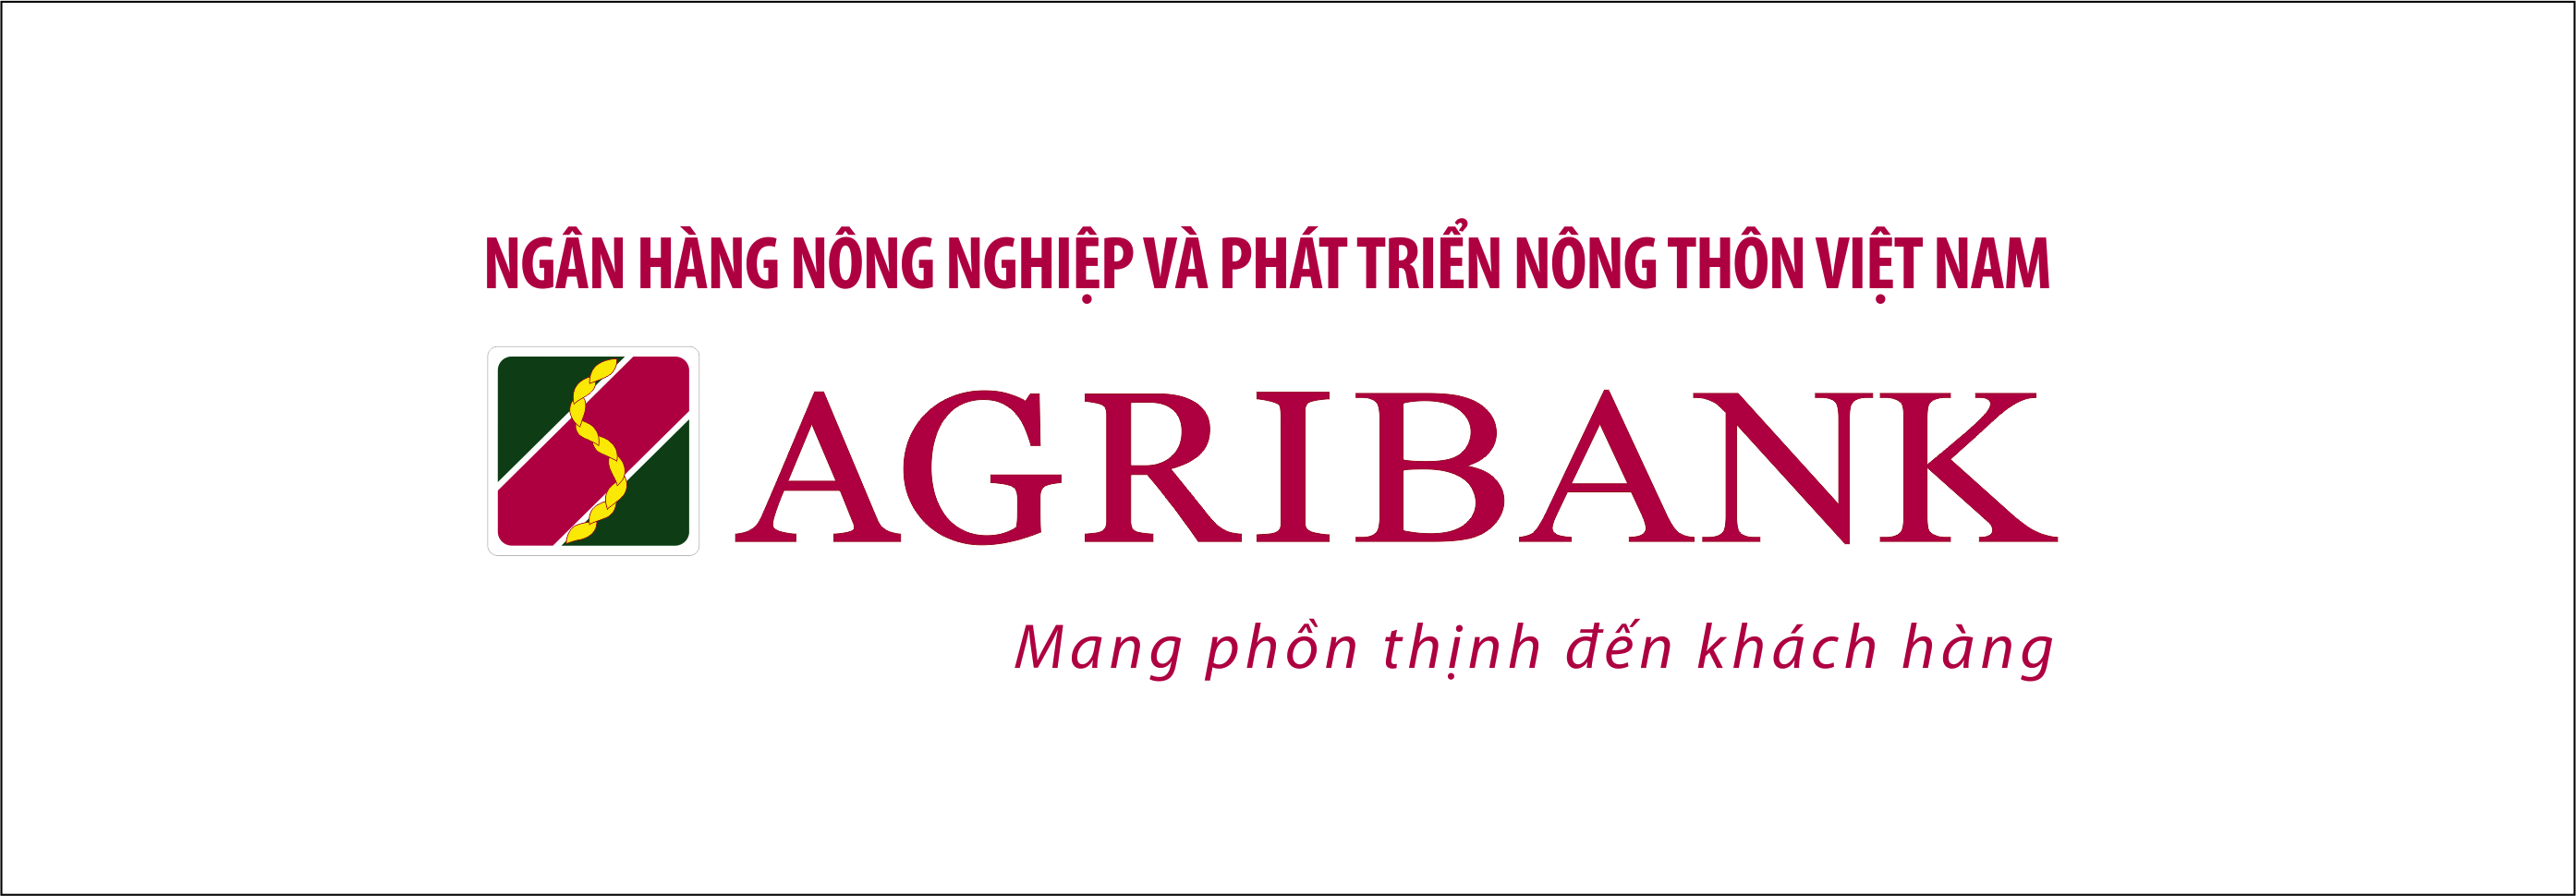 Về Ngân hàng Agribank